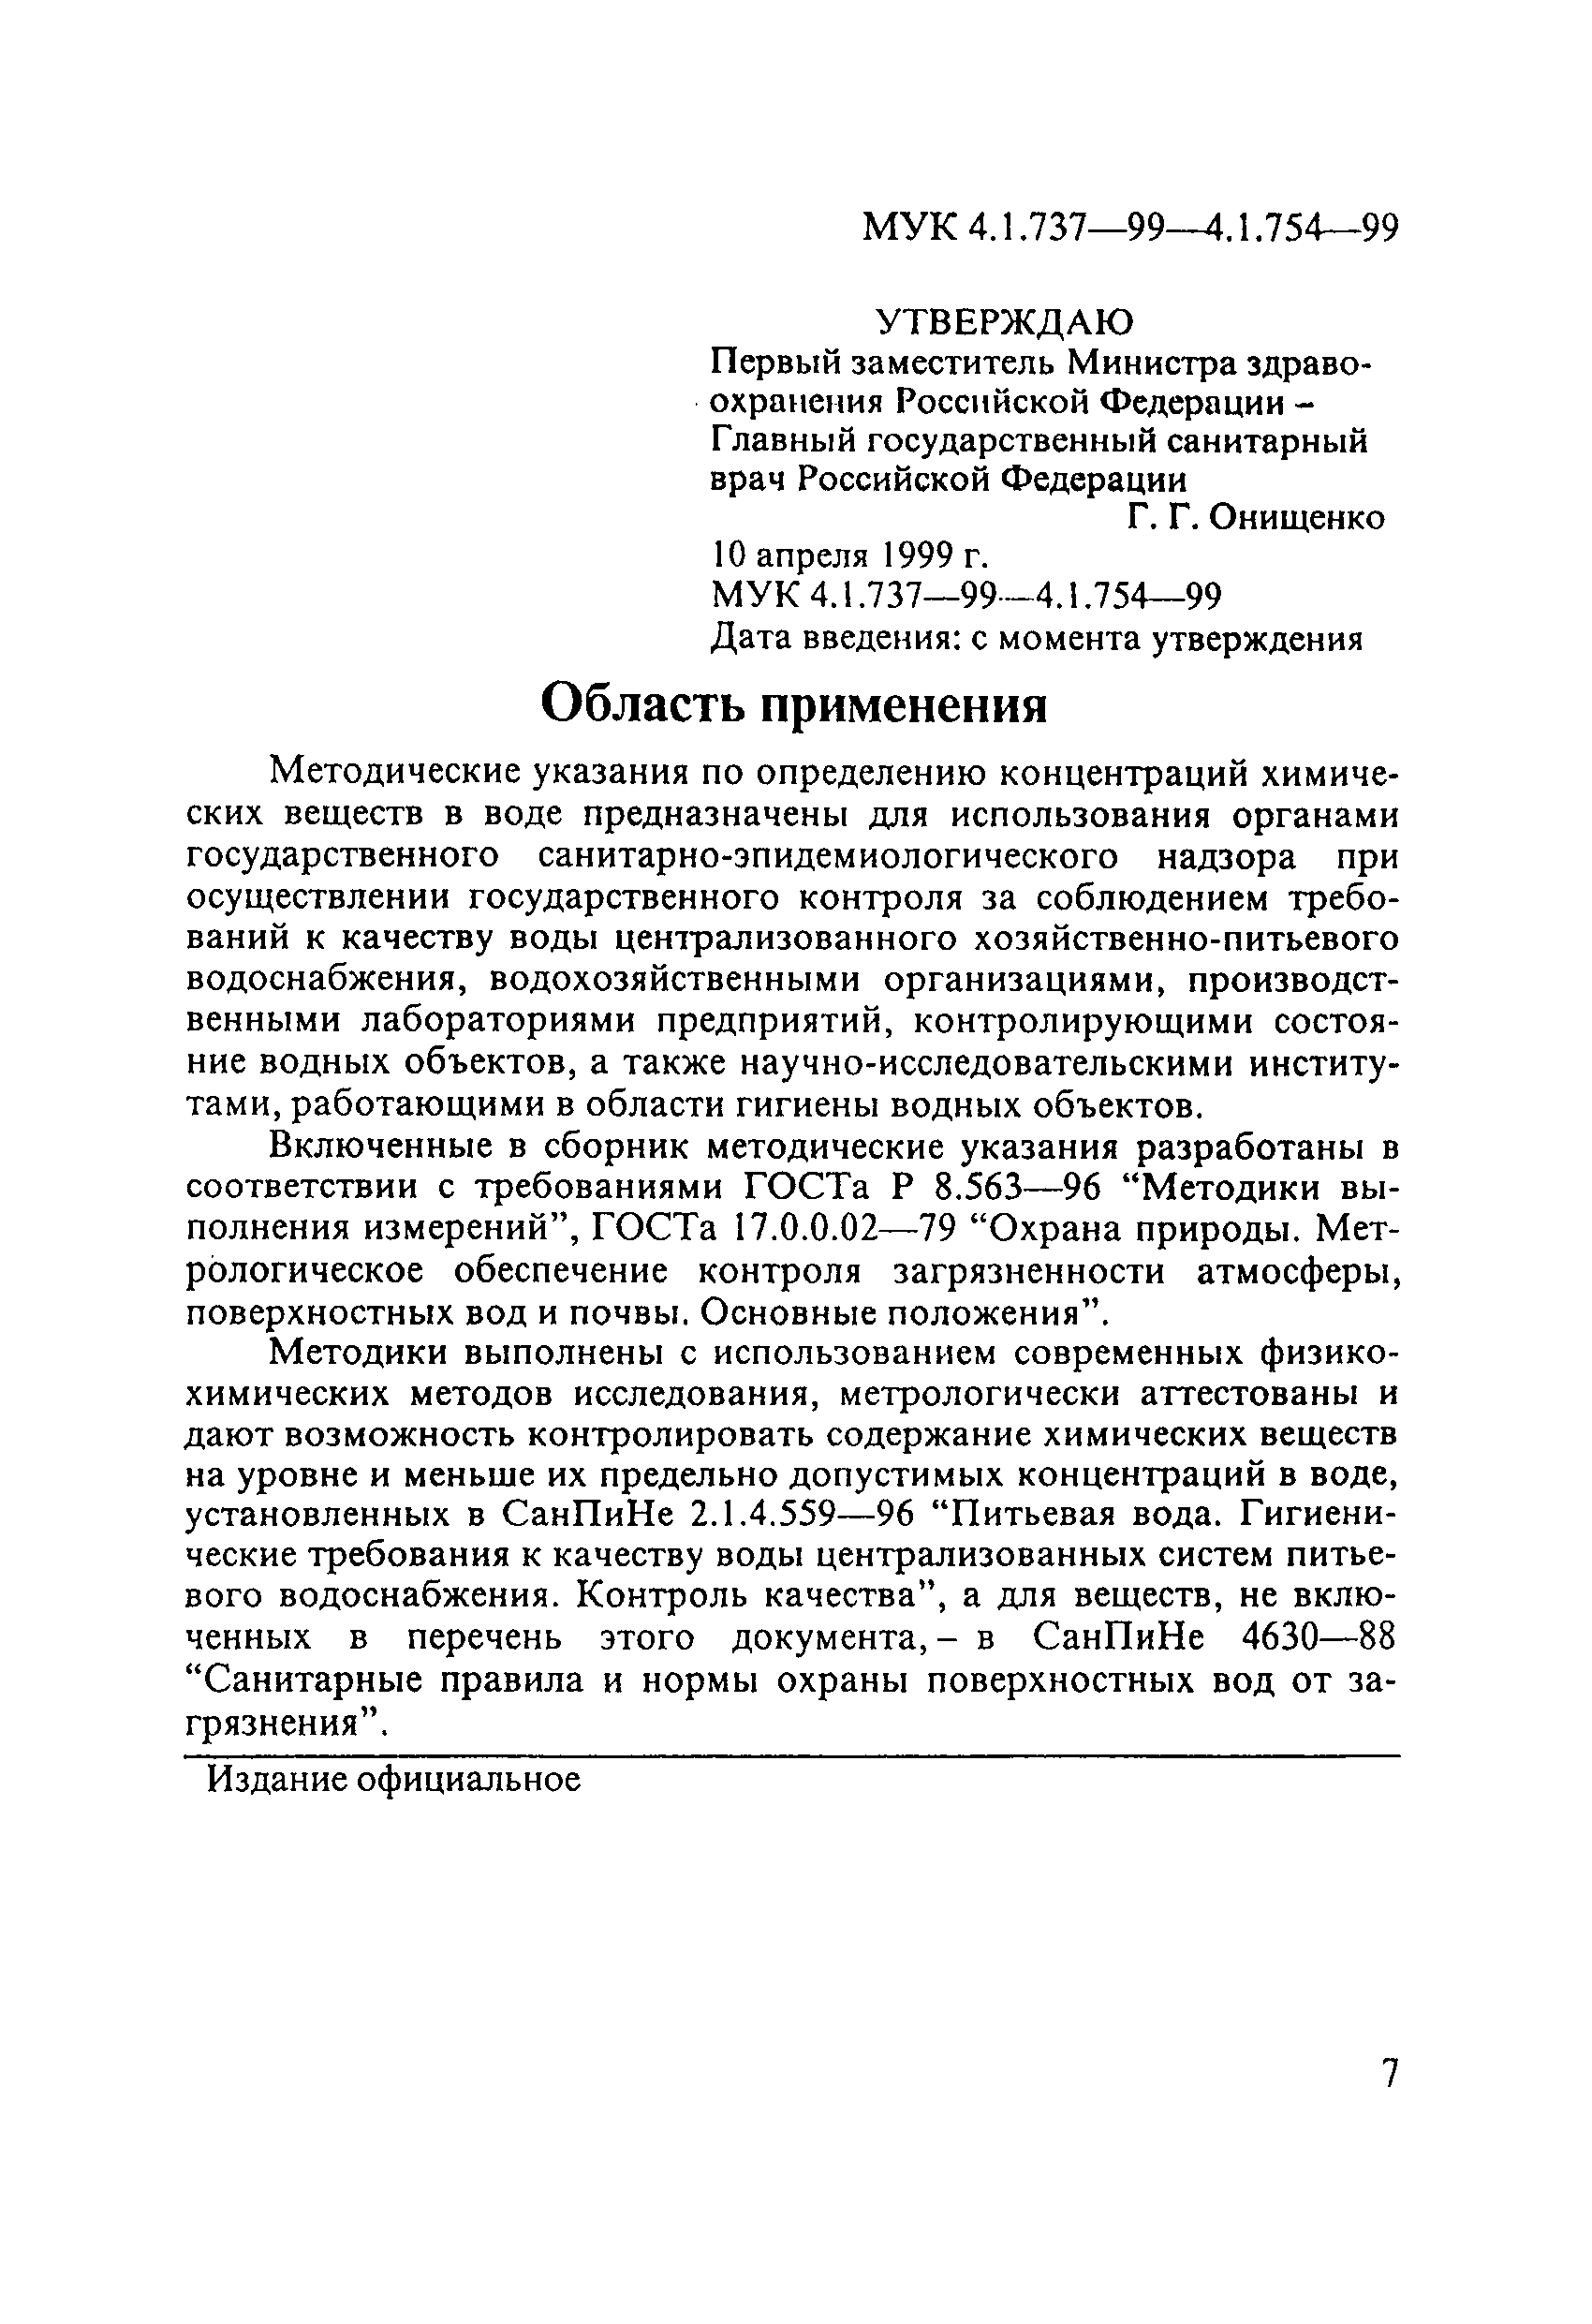 МУК 4.1.745-99